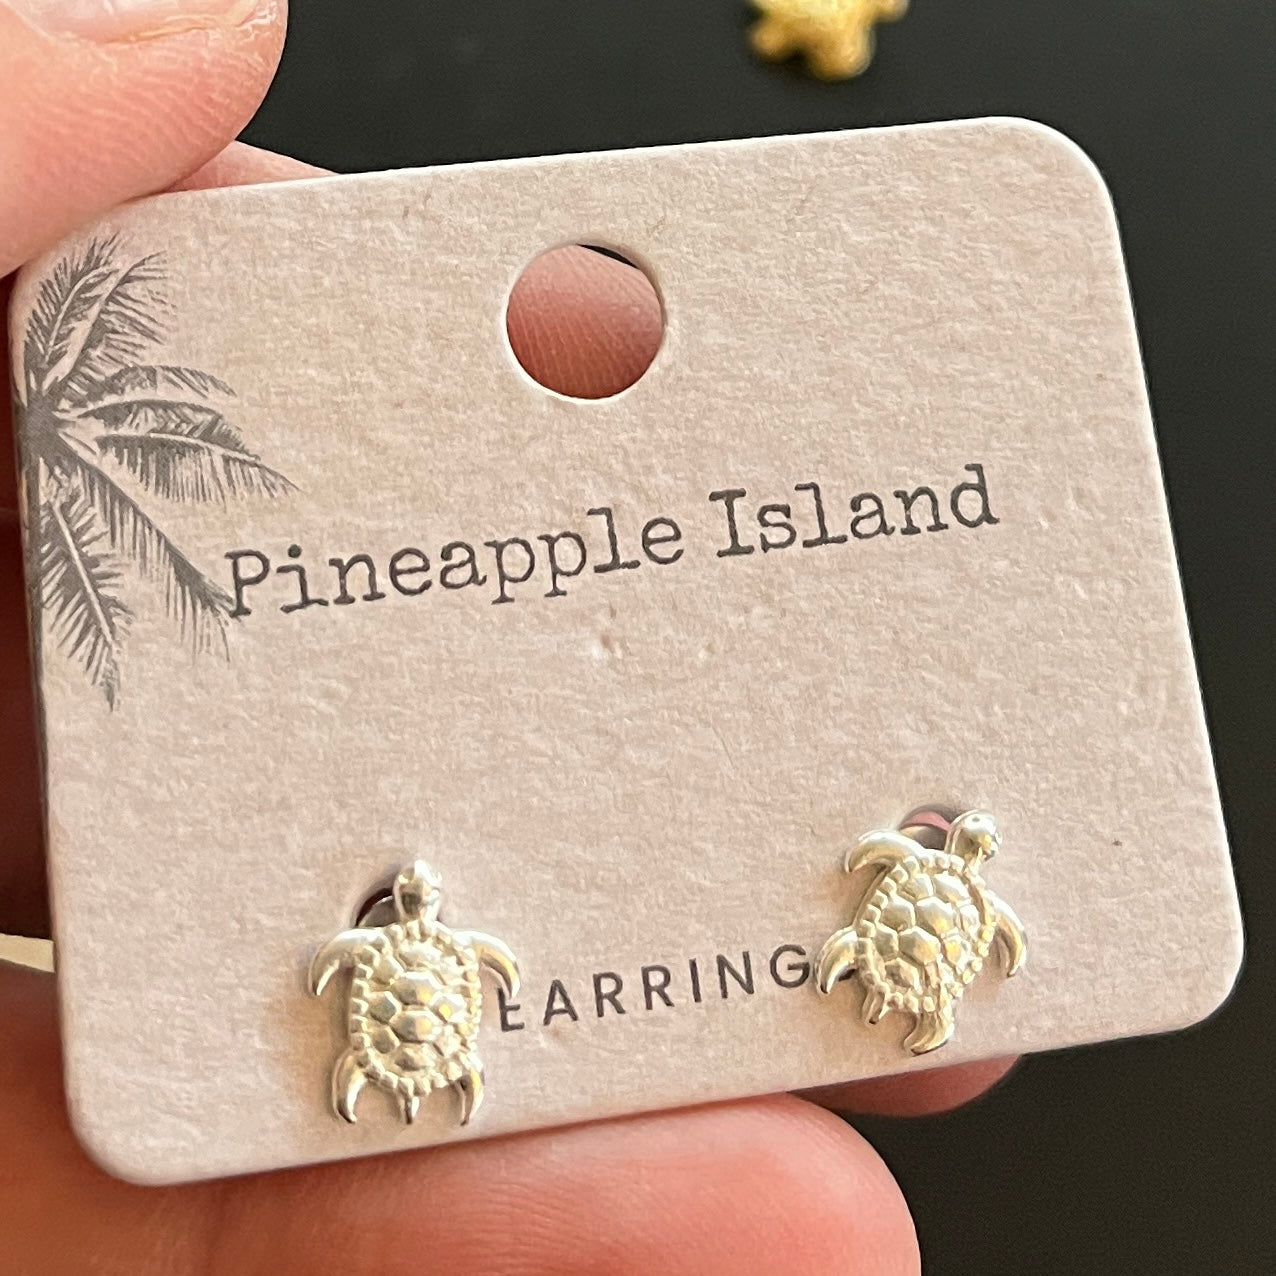 Sea Turtle earrings